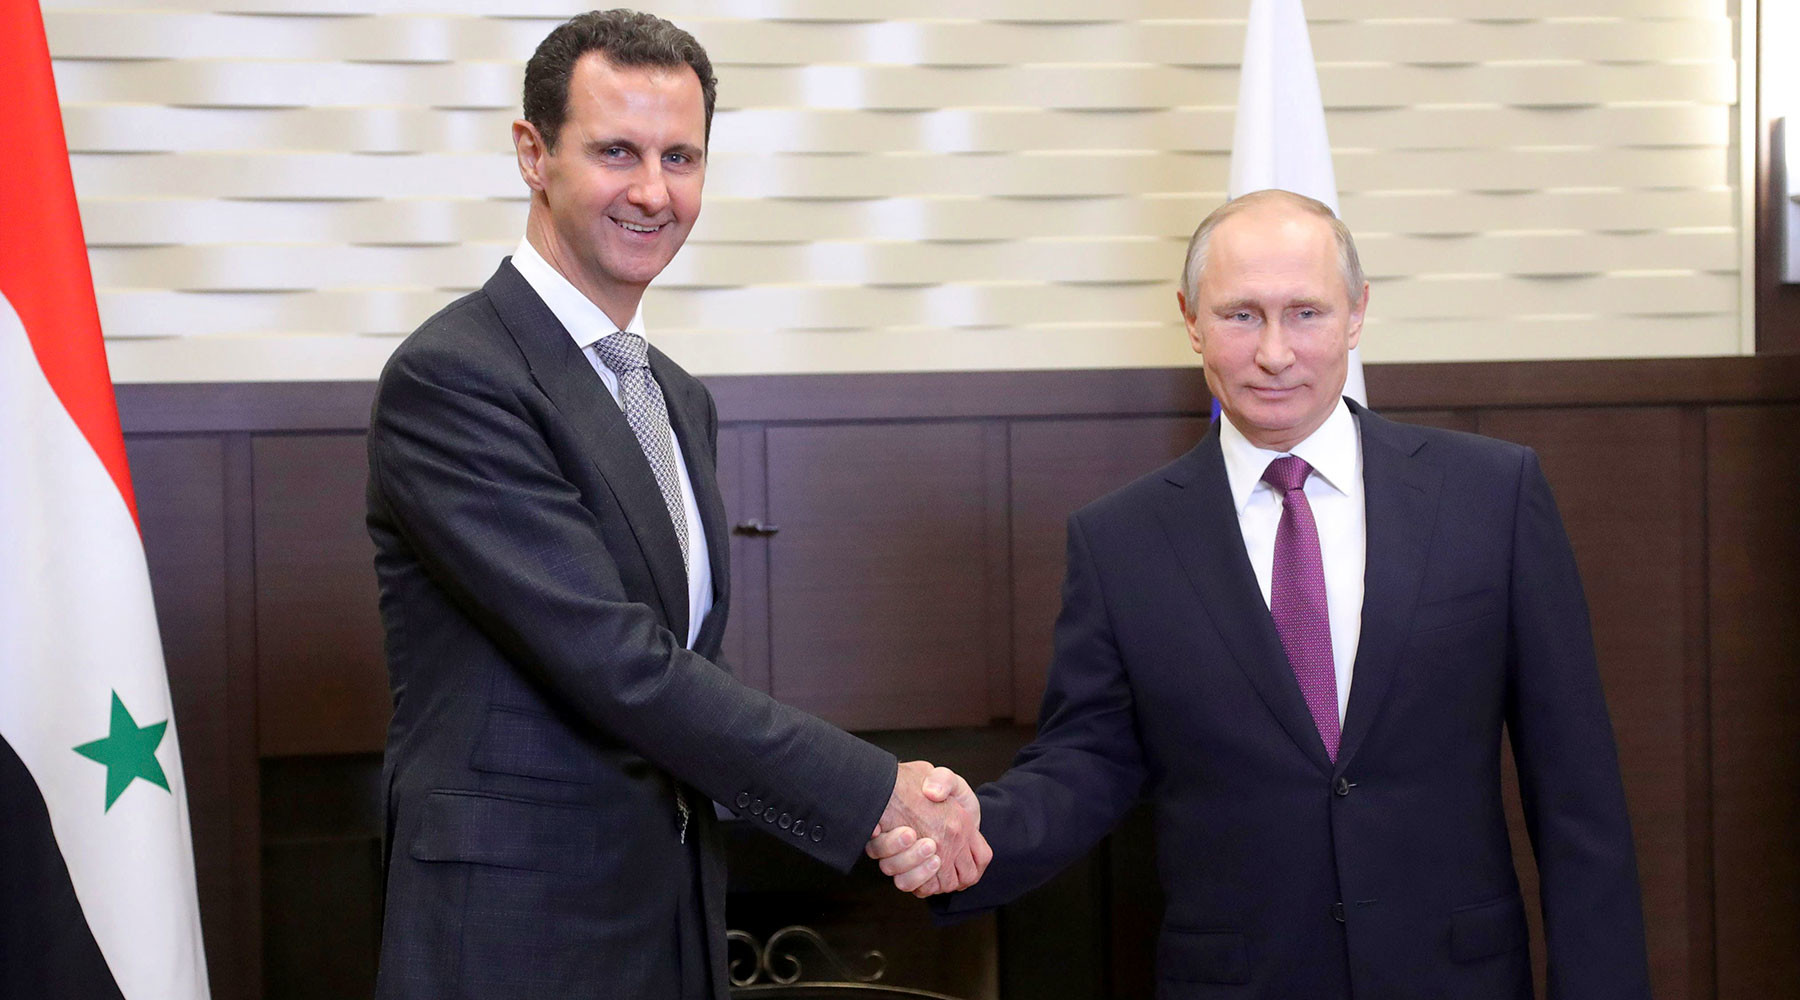 Башар Асад и Владимир Путин